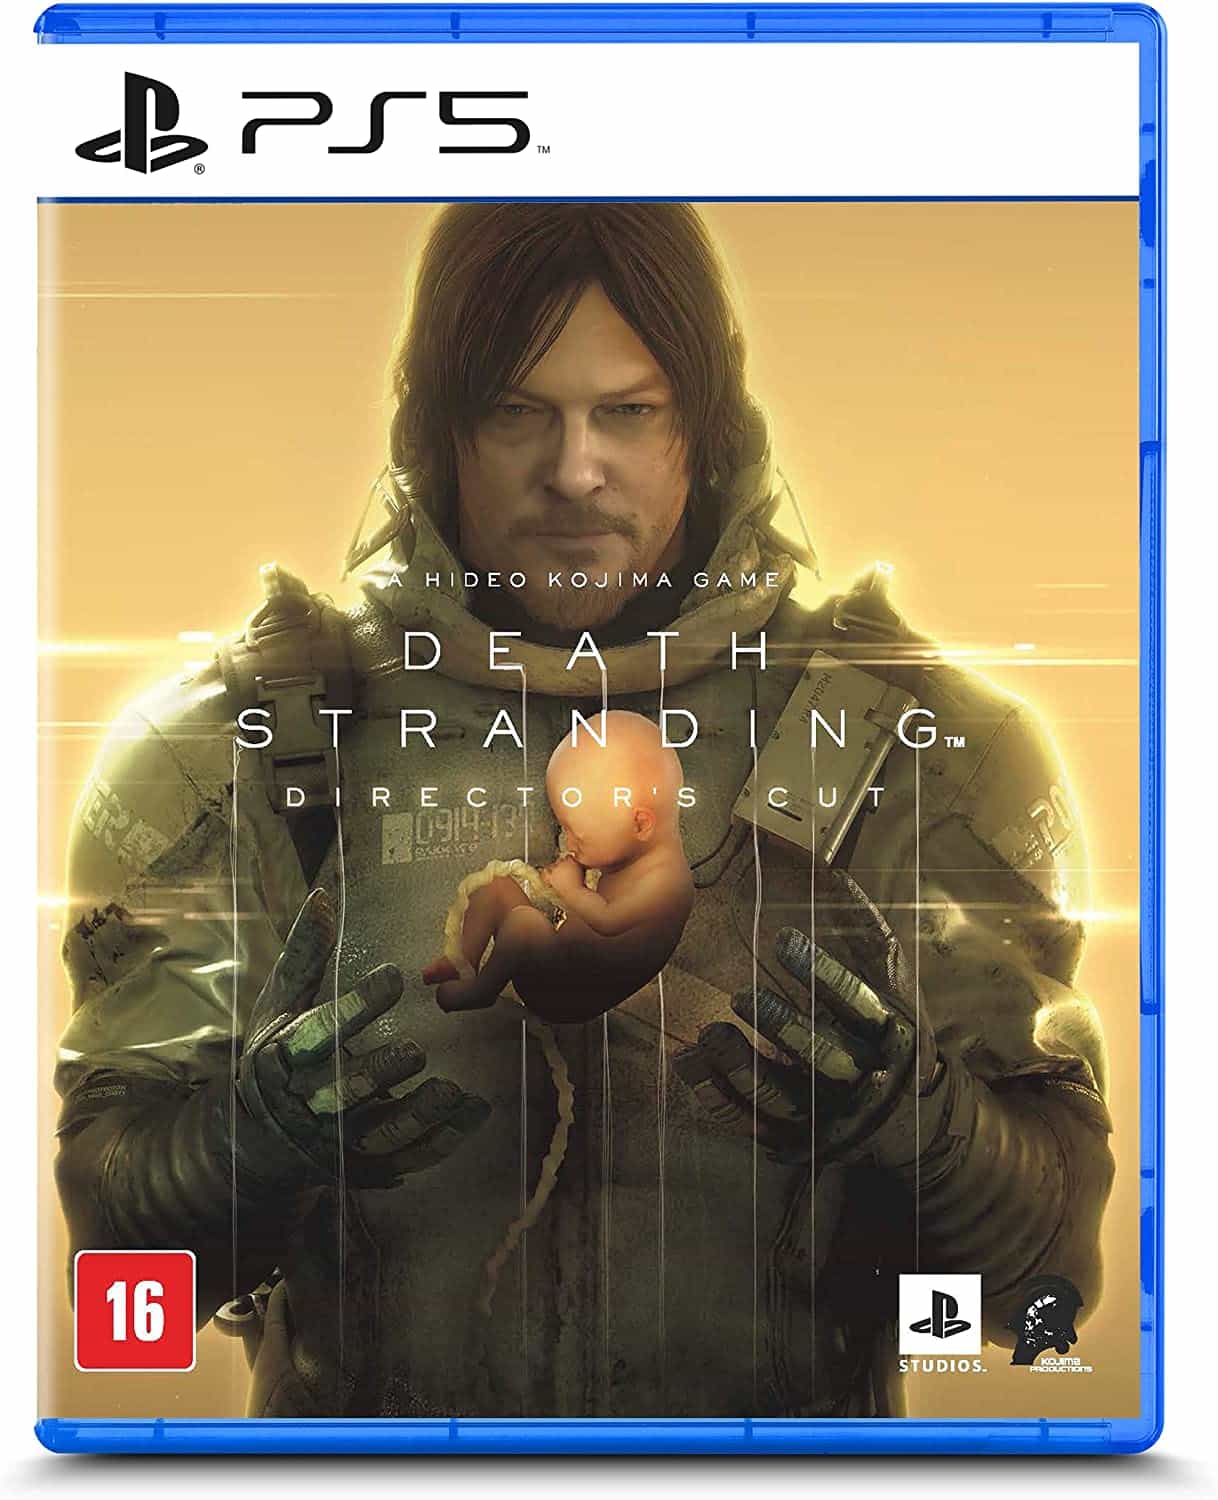 Compre o jogo Usado Death Stranding - PS4 na Level 1 Games